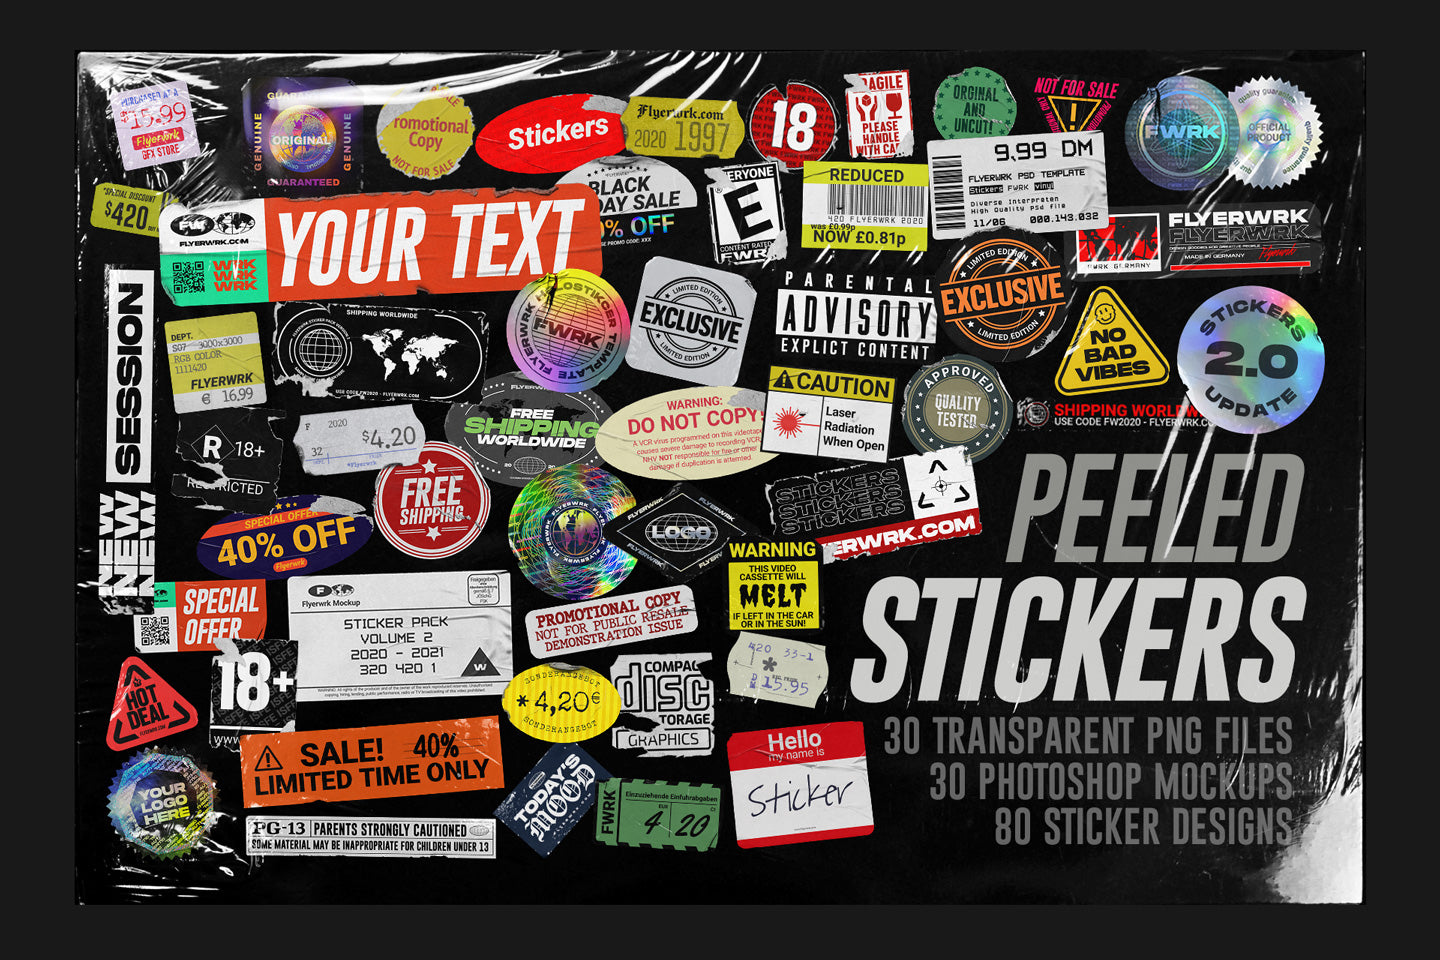 Peeled Stickers – flyerwrk